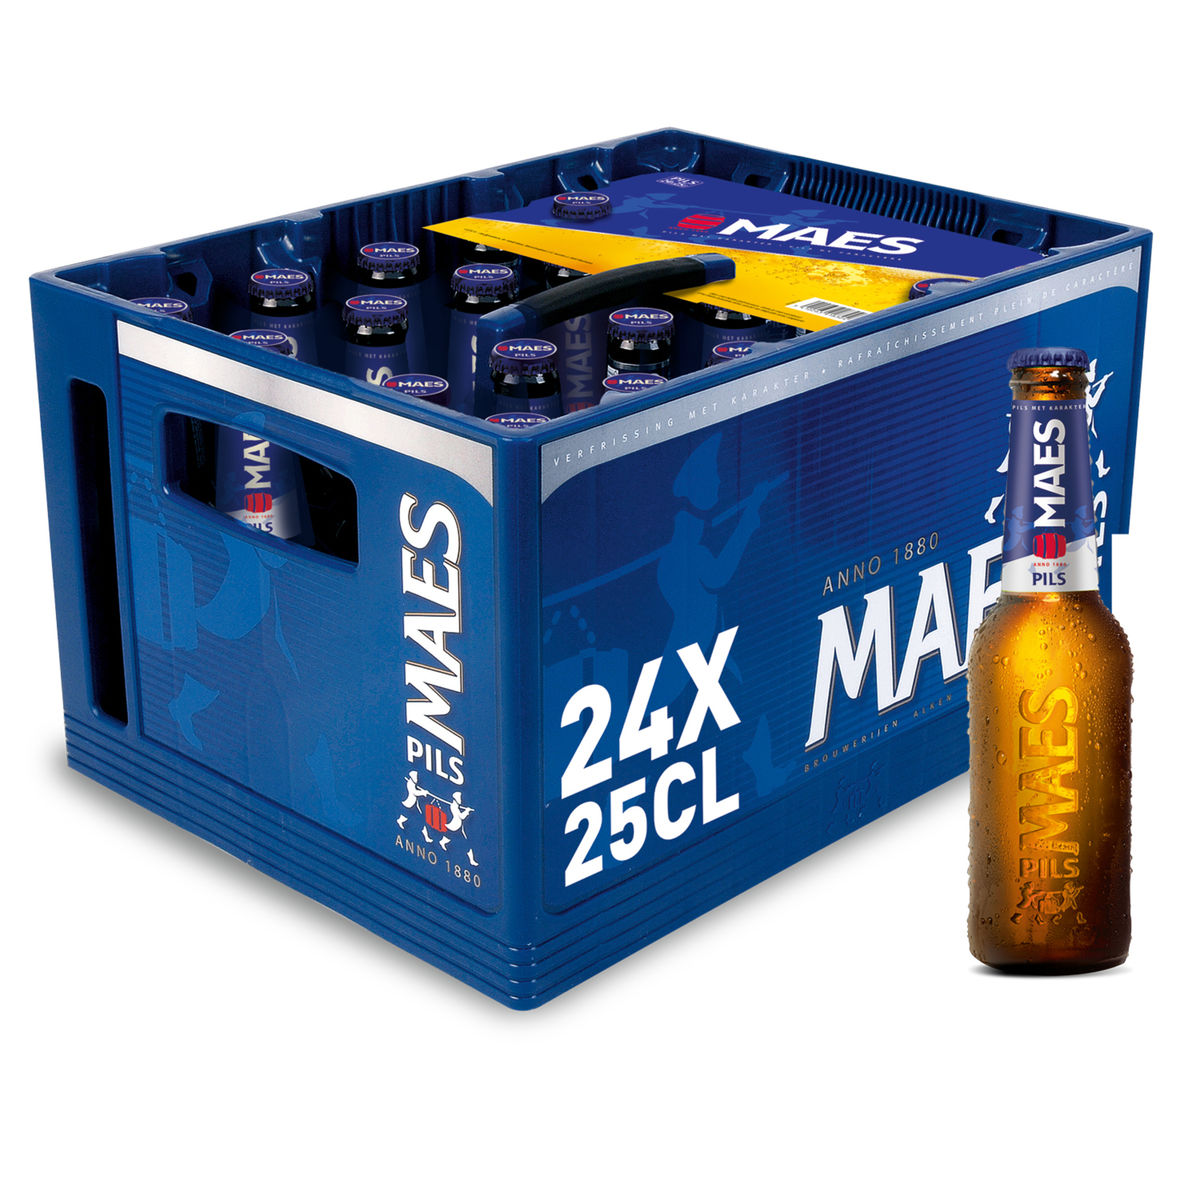 Maes Bière blonde Pils 5.2% ALC 24x25cl Bac